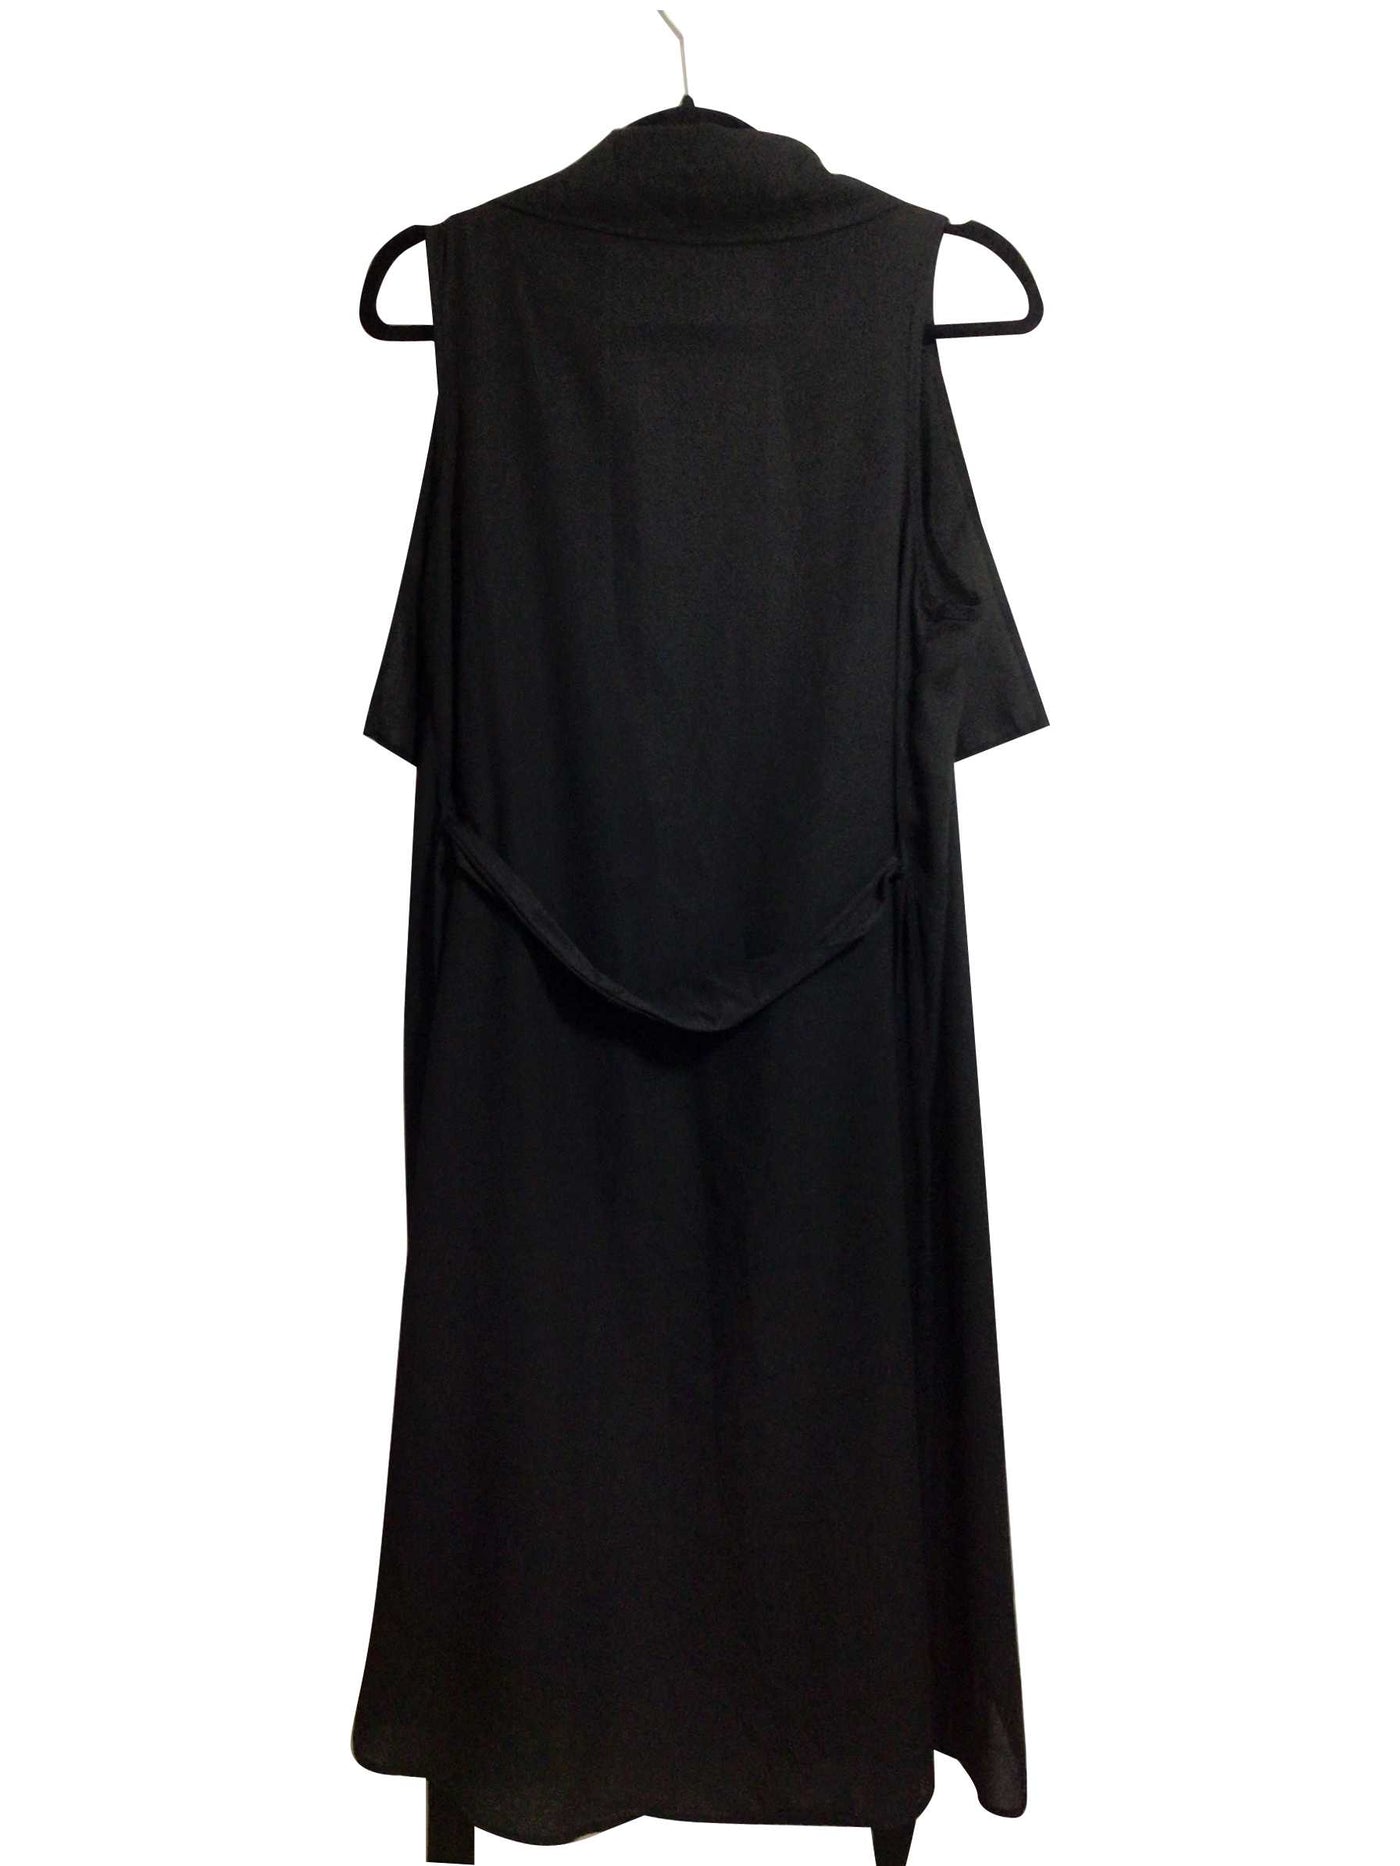 WINDSOR Regular fit Blouse in Black - Size M | 12.99 $ KOOP